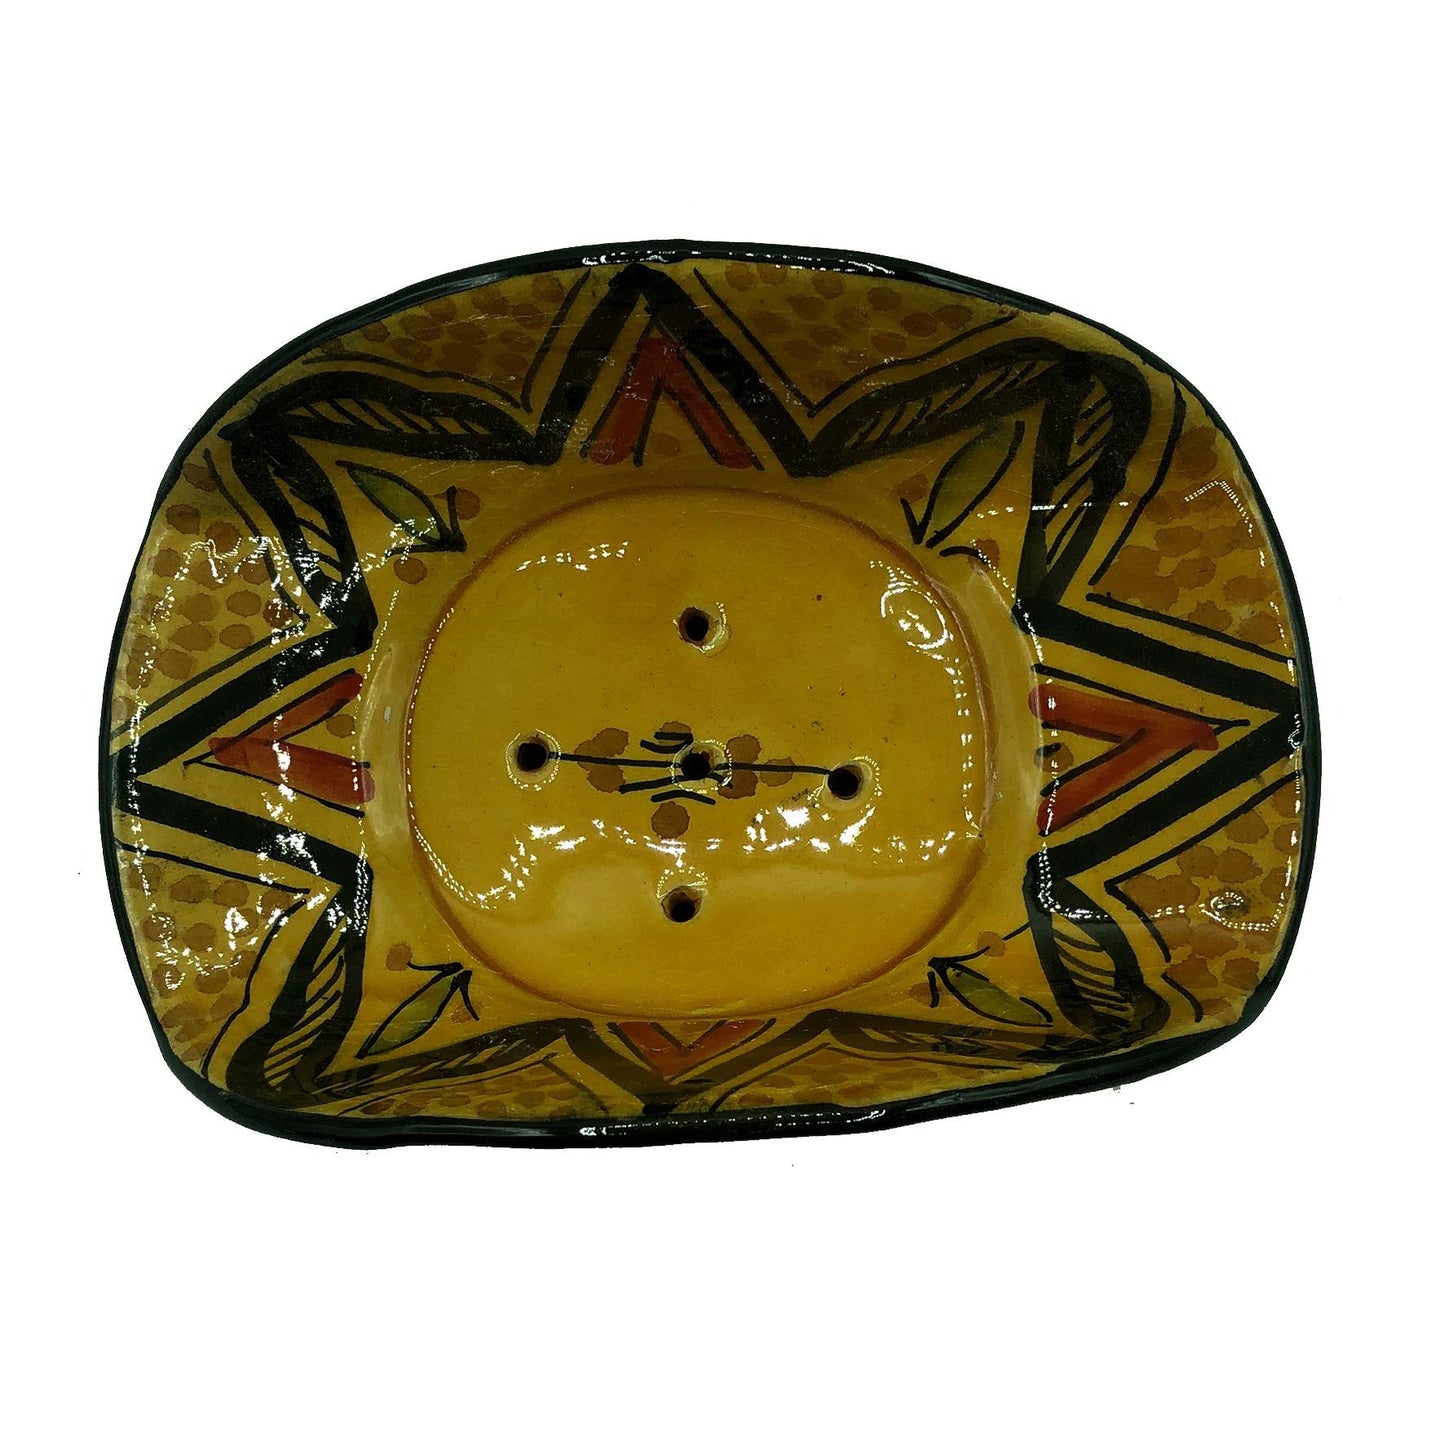 Arredamento Etnico Porta Sapone Ceramica Terre Cuite Artigiano Marocco 1904211005